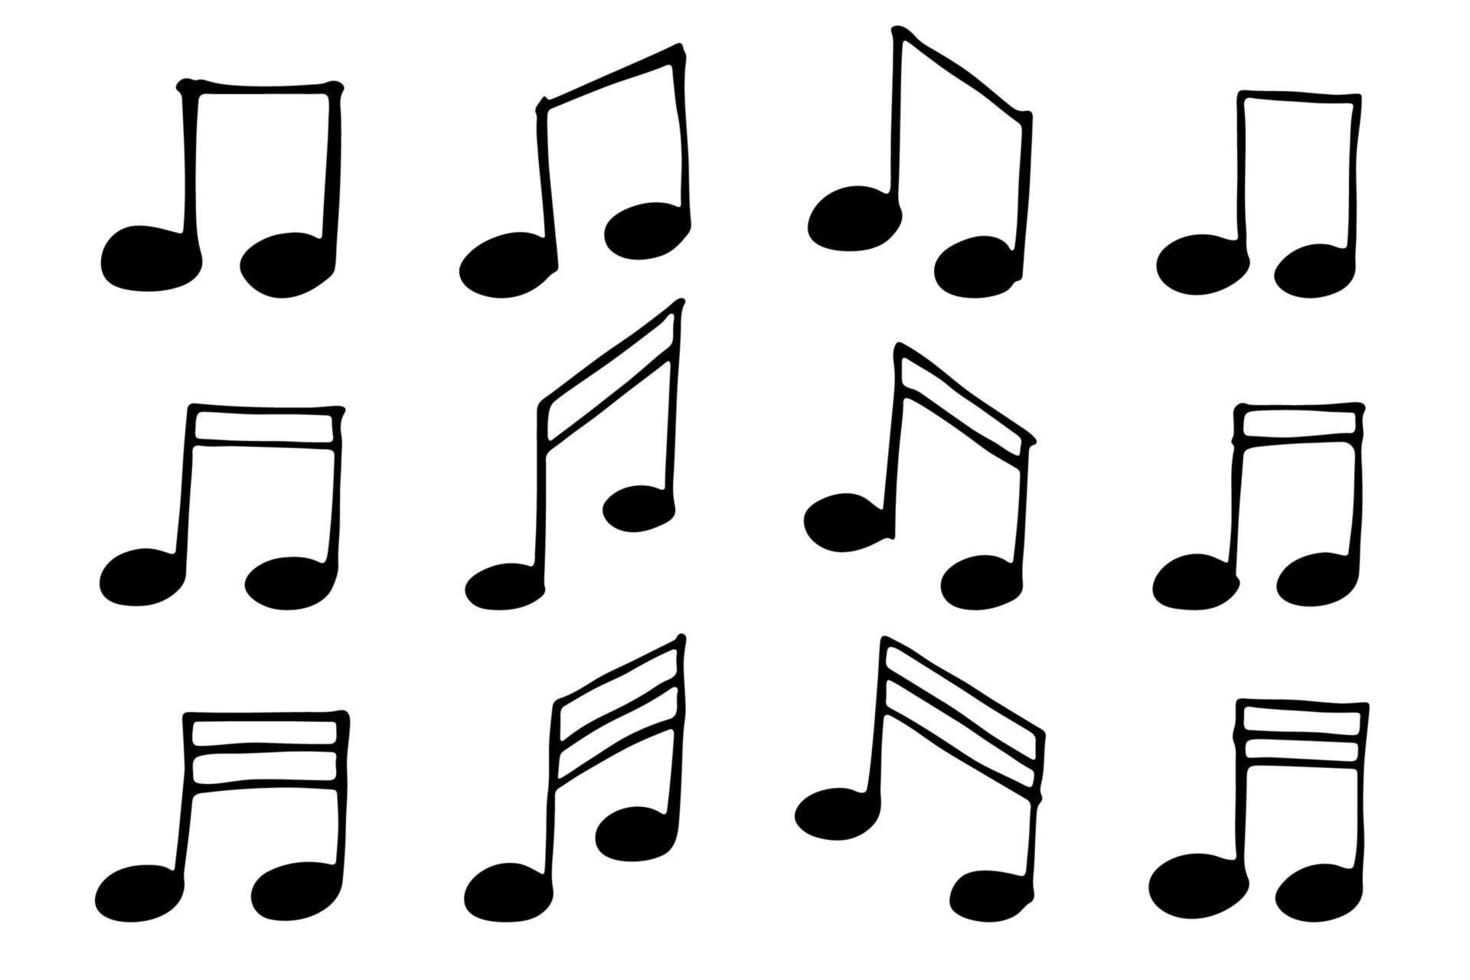 Musiknoten-Doodle-Set. hand gezeichnetes musikalisches symbol. elemente für druck, web, design, dekor, logo vektor